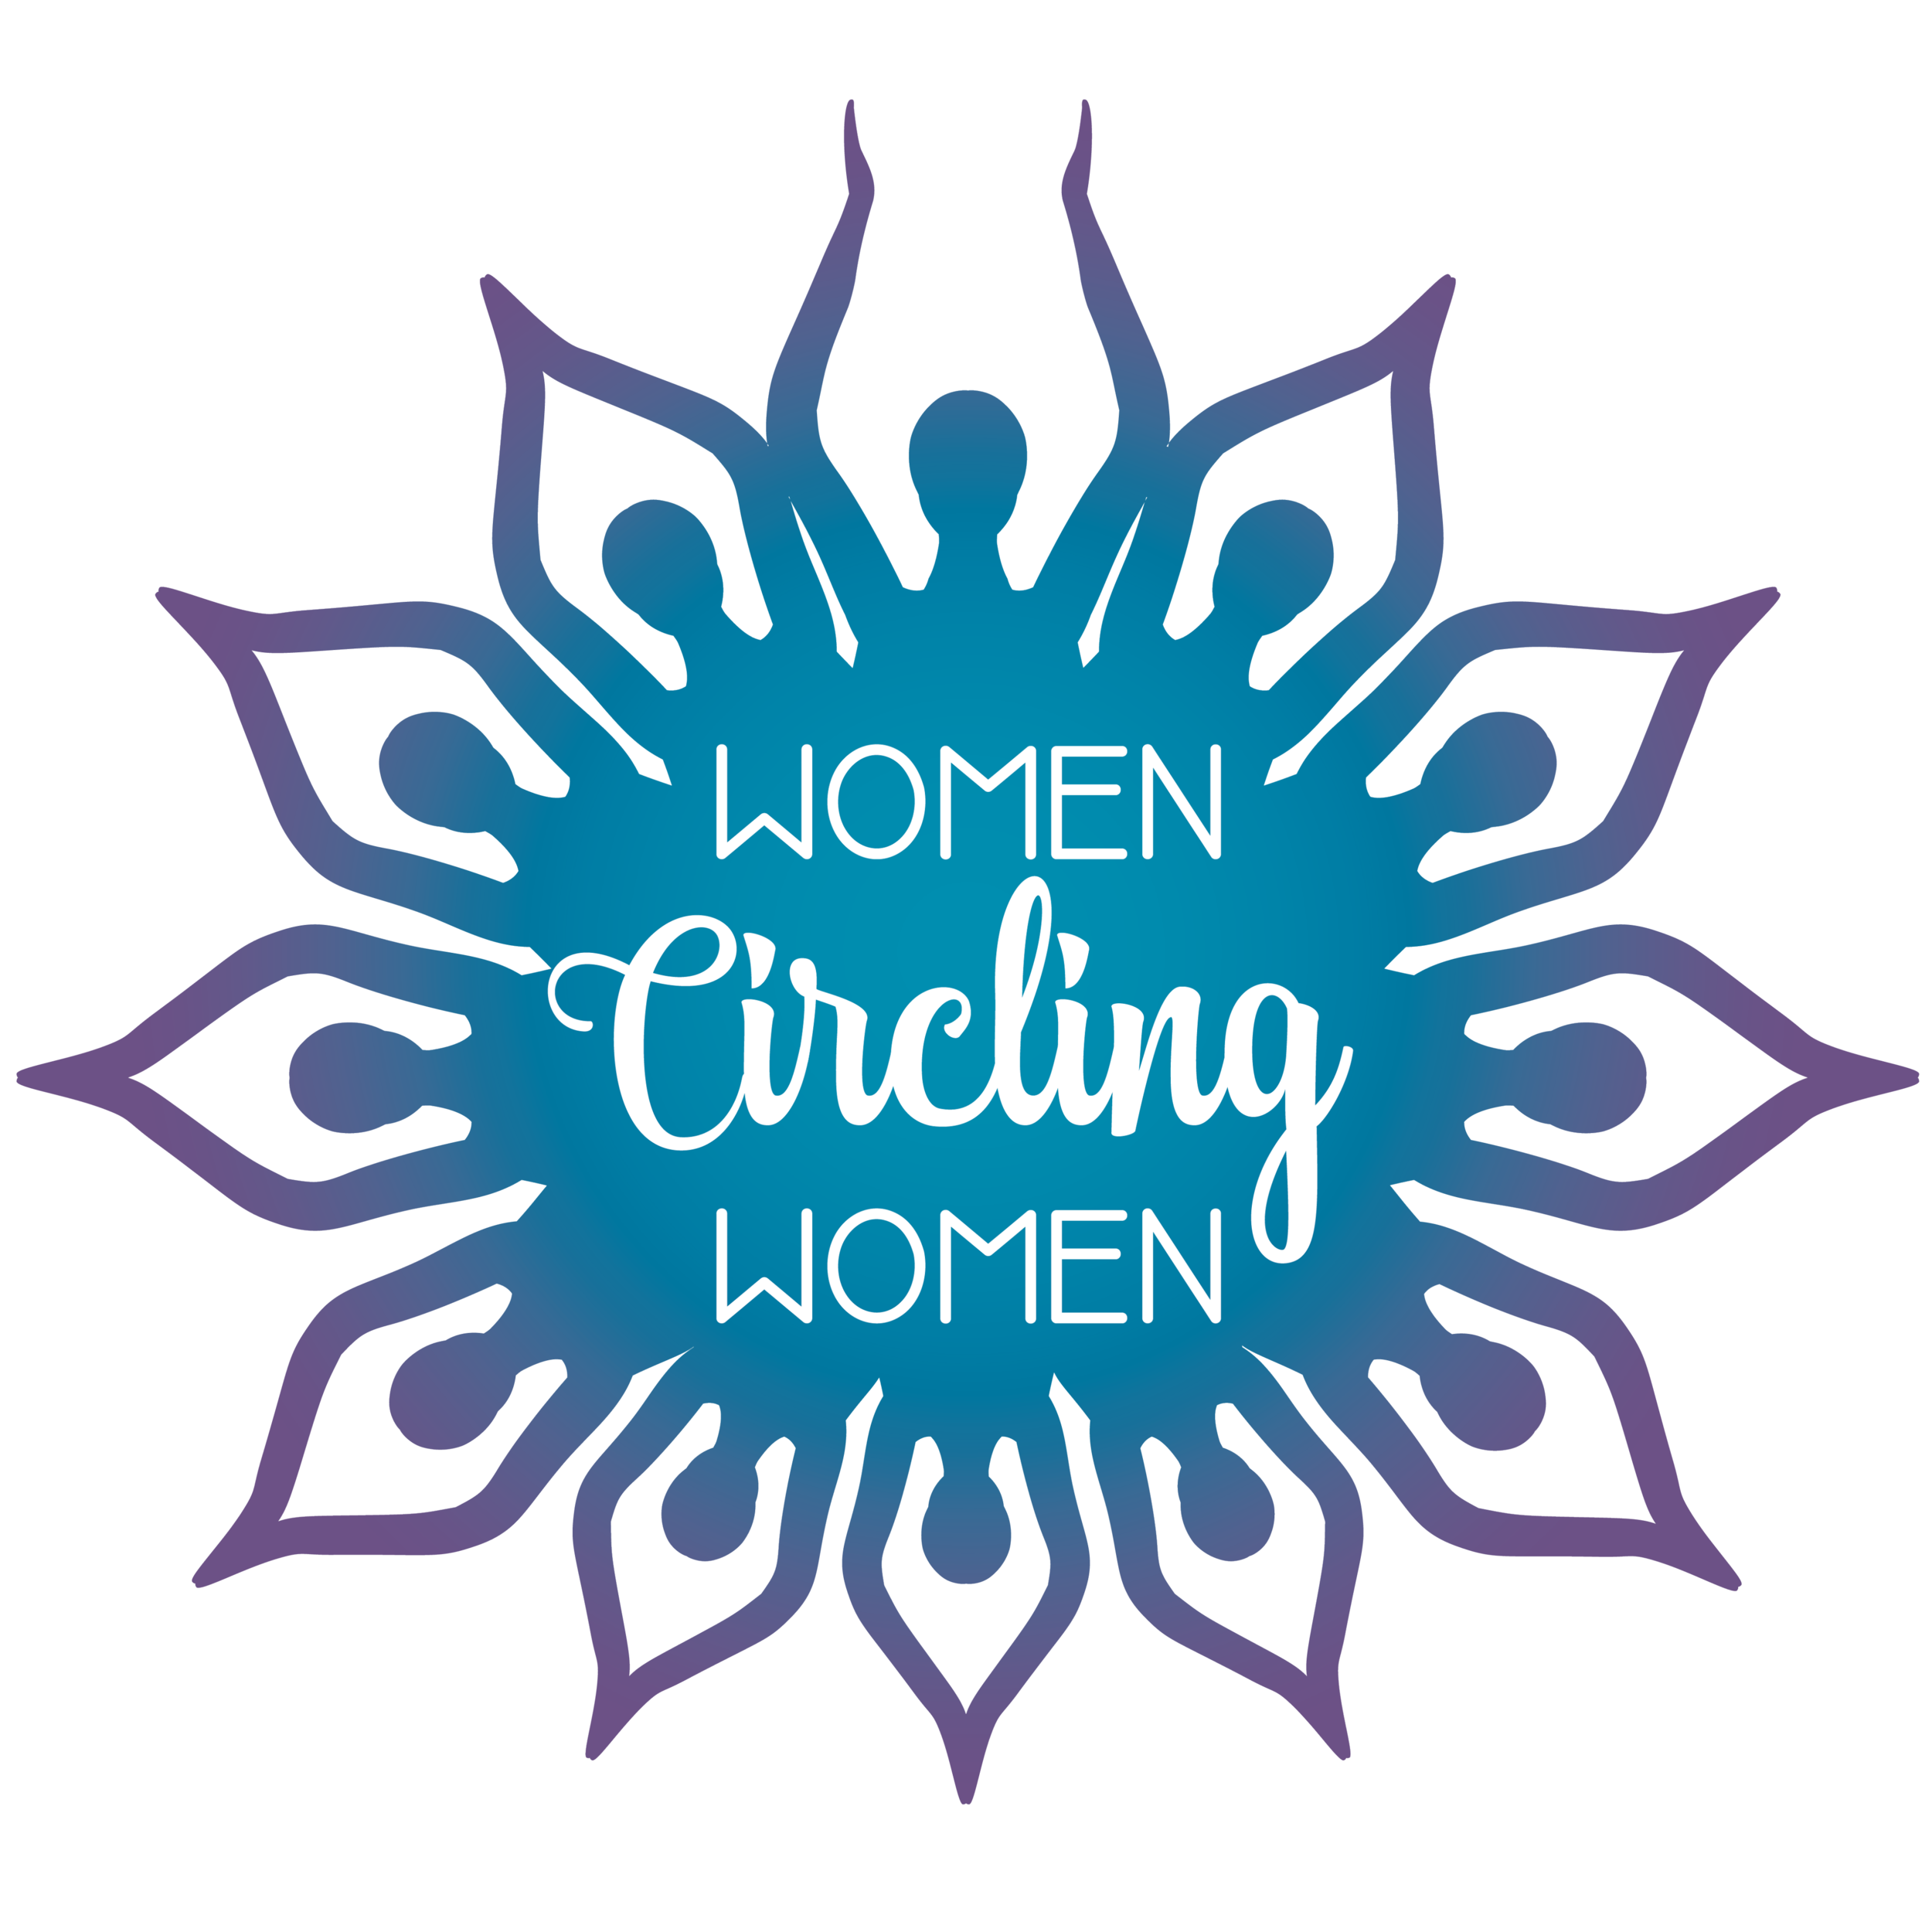 Women Circling Women